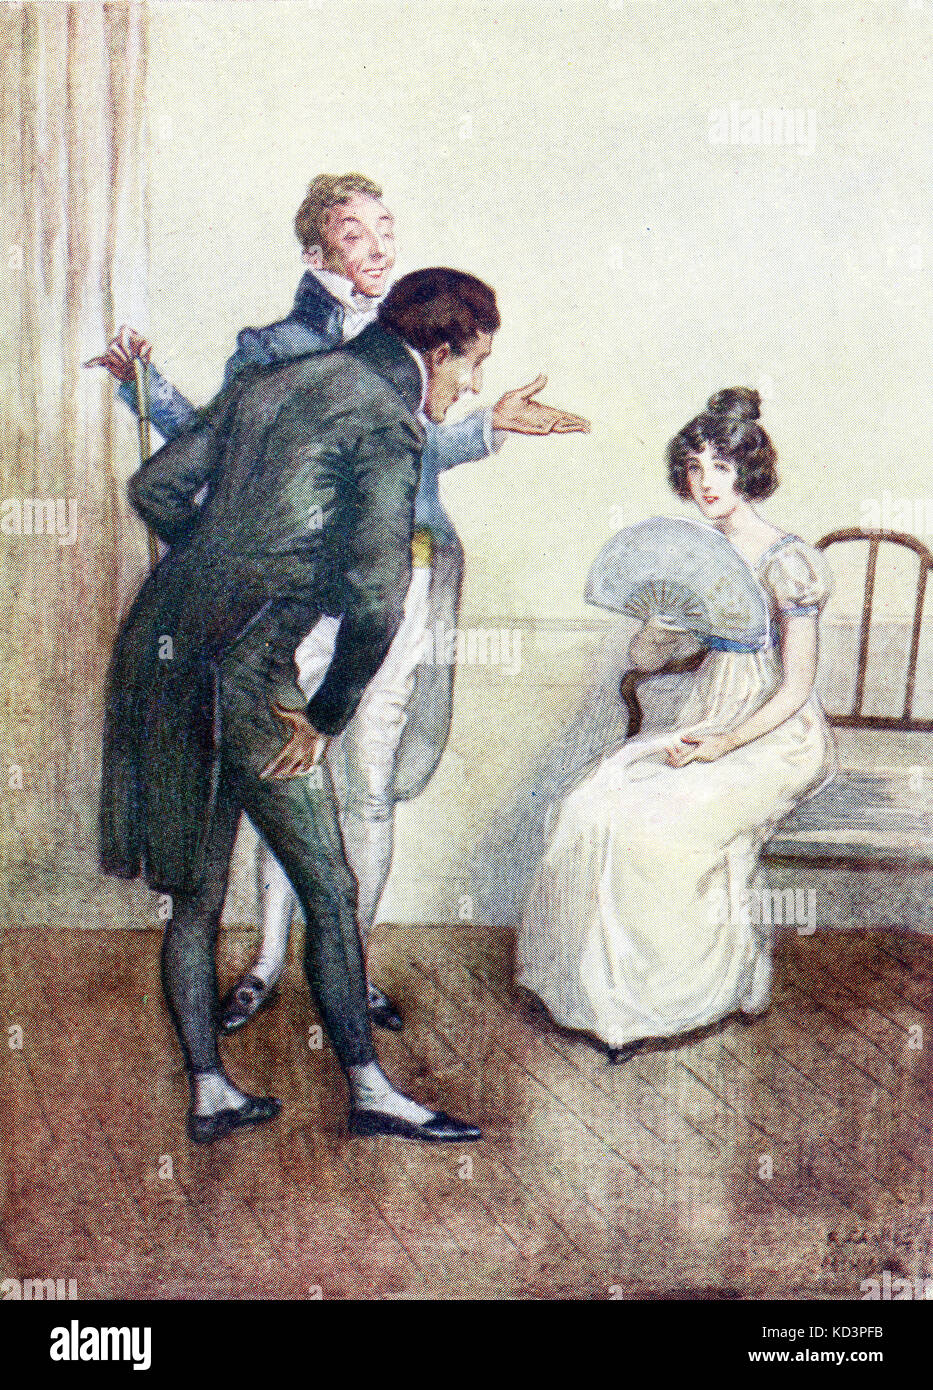 Il maestro delle cerimonie introduce Caterina a Henry Tilbury presso le Lower Rooms di Bath. Abbazia di Northanger di Jane Austen, illustrazione di Alfred Wallis Mills, 1917 Foto Stock